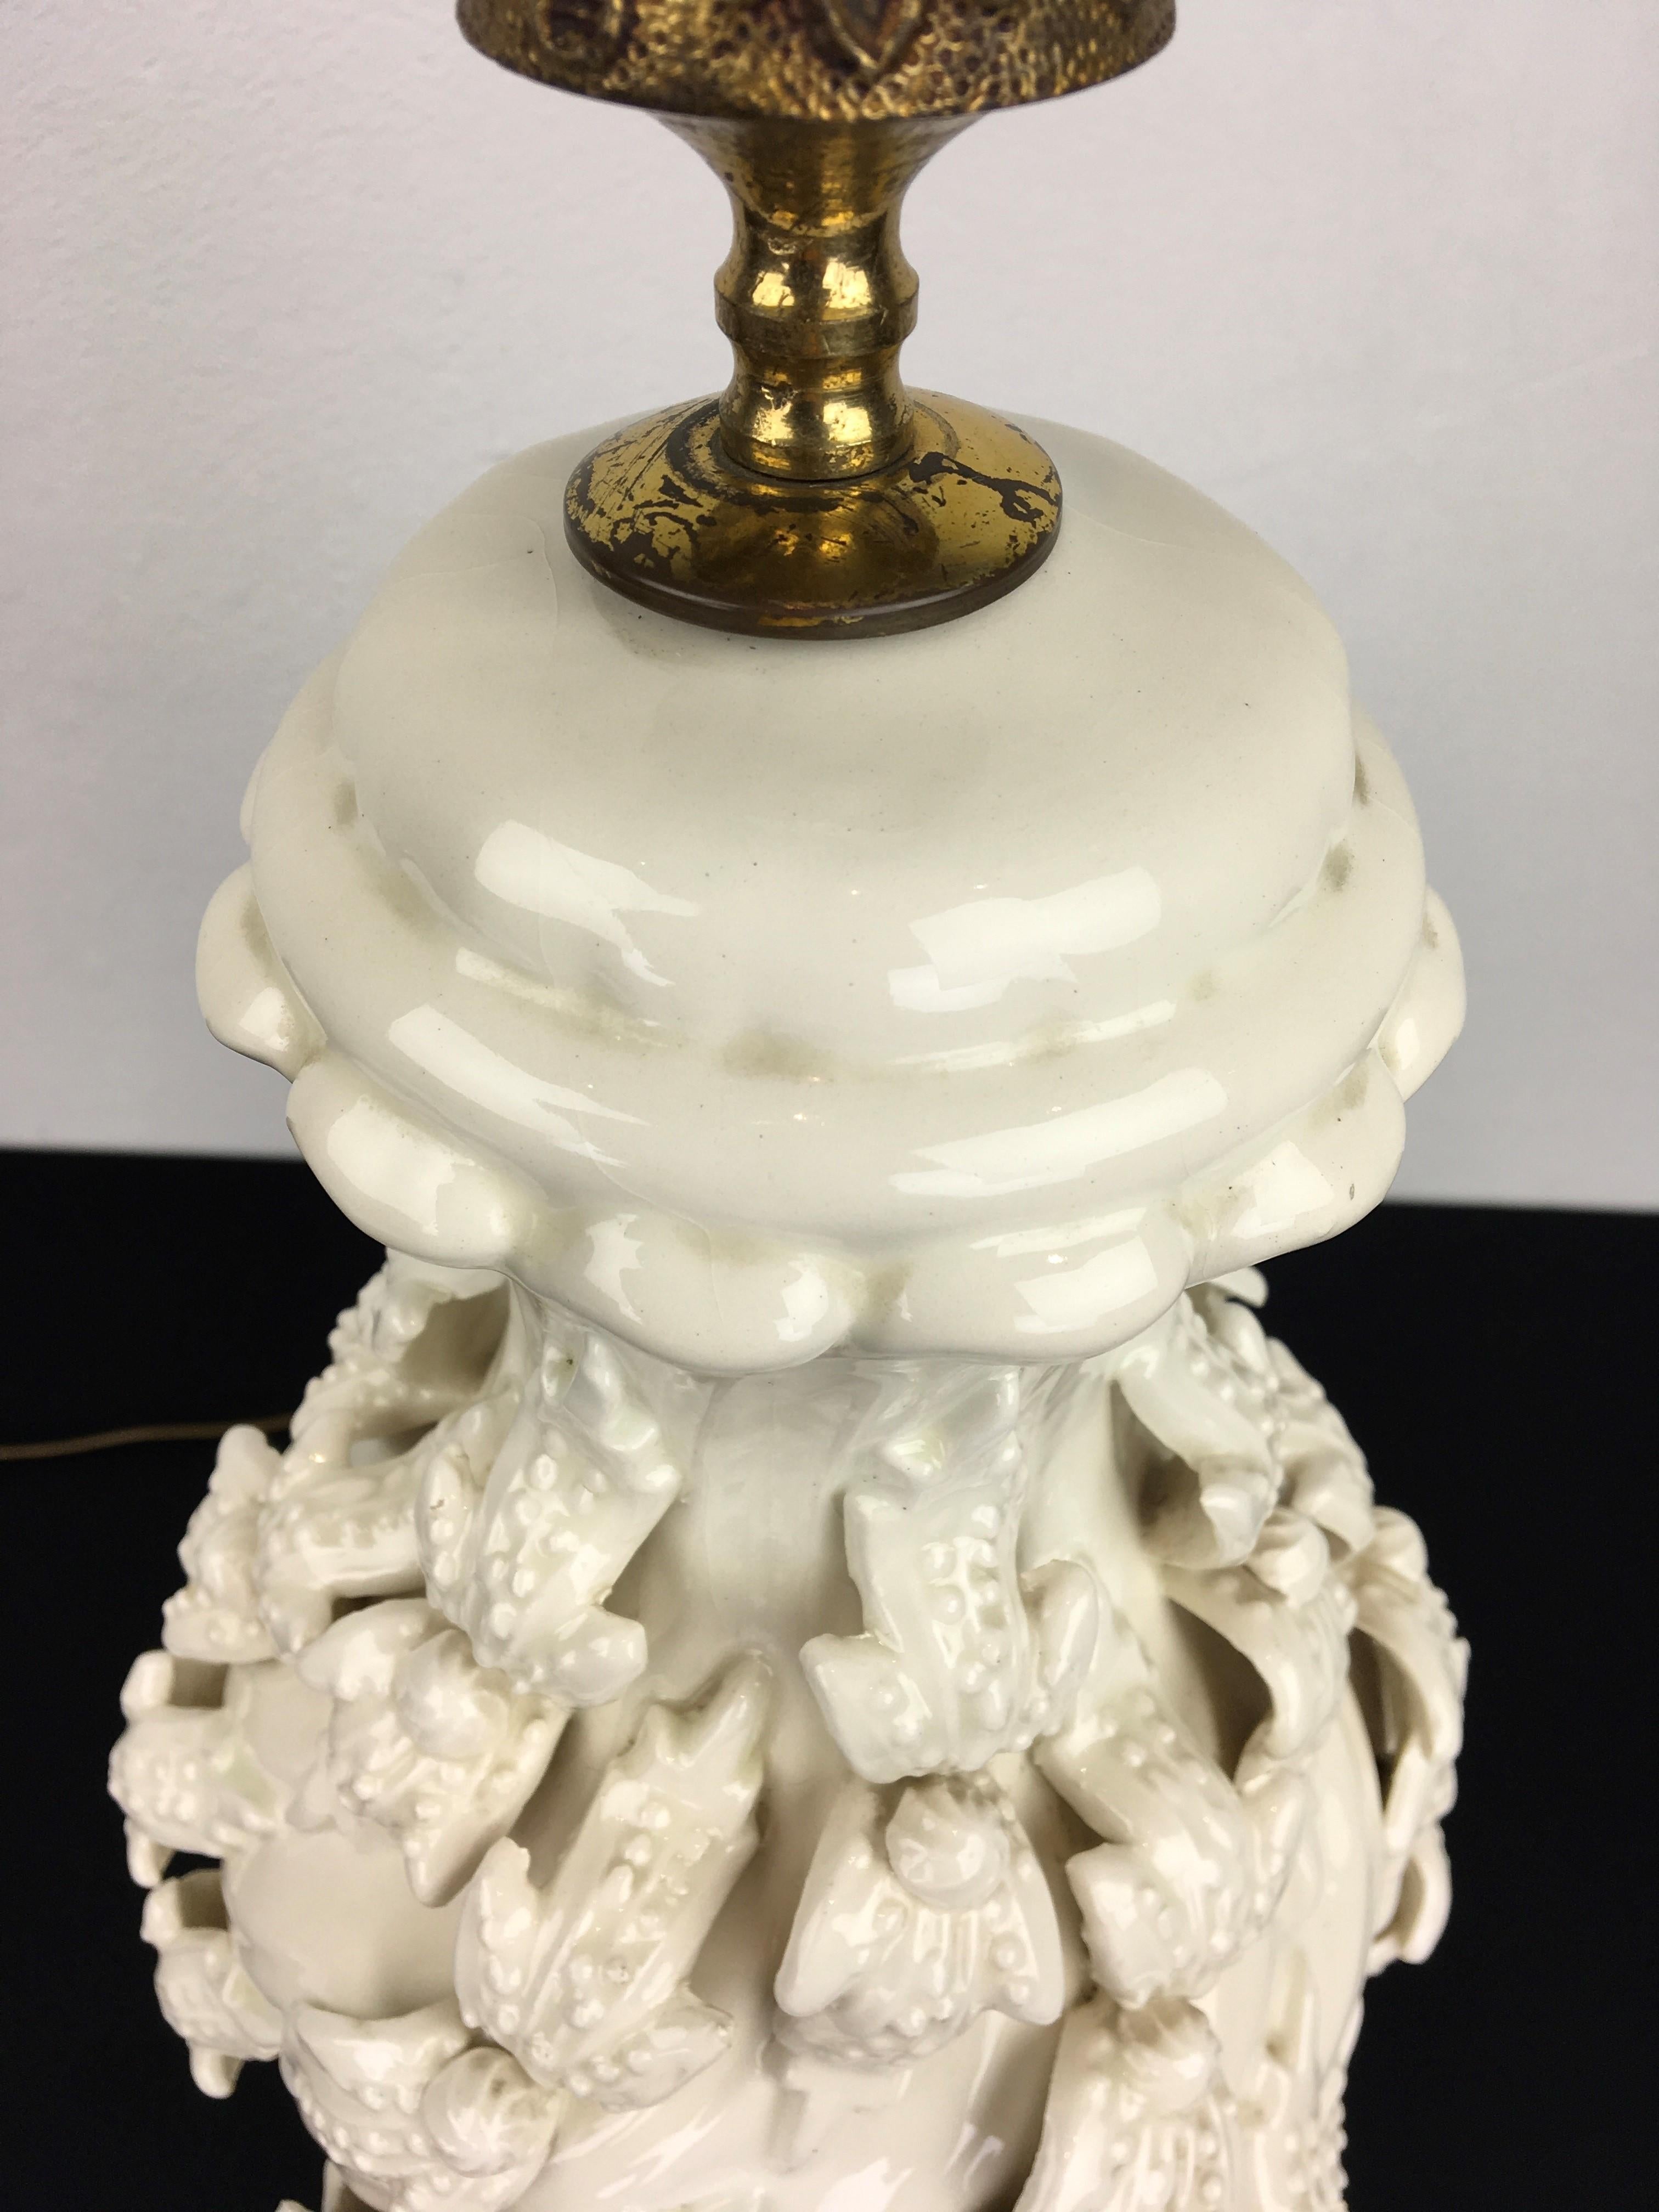 Spanische weiße Manises Keramik Tischlampe mit Blumen. 
Diese weiße Tischlampe ist rundherum mit schönen Blumen verziert und steht auf einem vergoldeten Holzsockel.
Eine weiß glasierte, skulpturale Keramik-Tischleuchte aus den 1960er Jahren, die